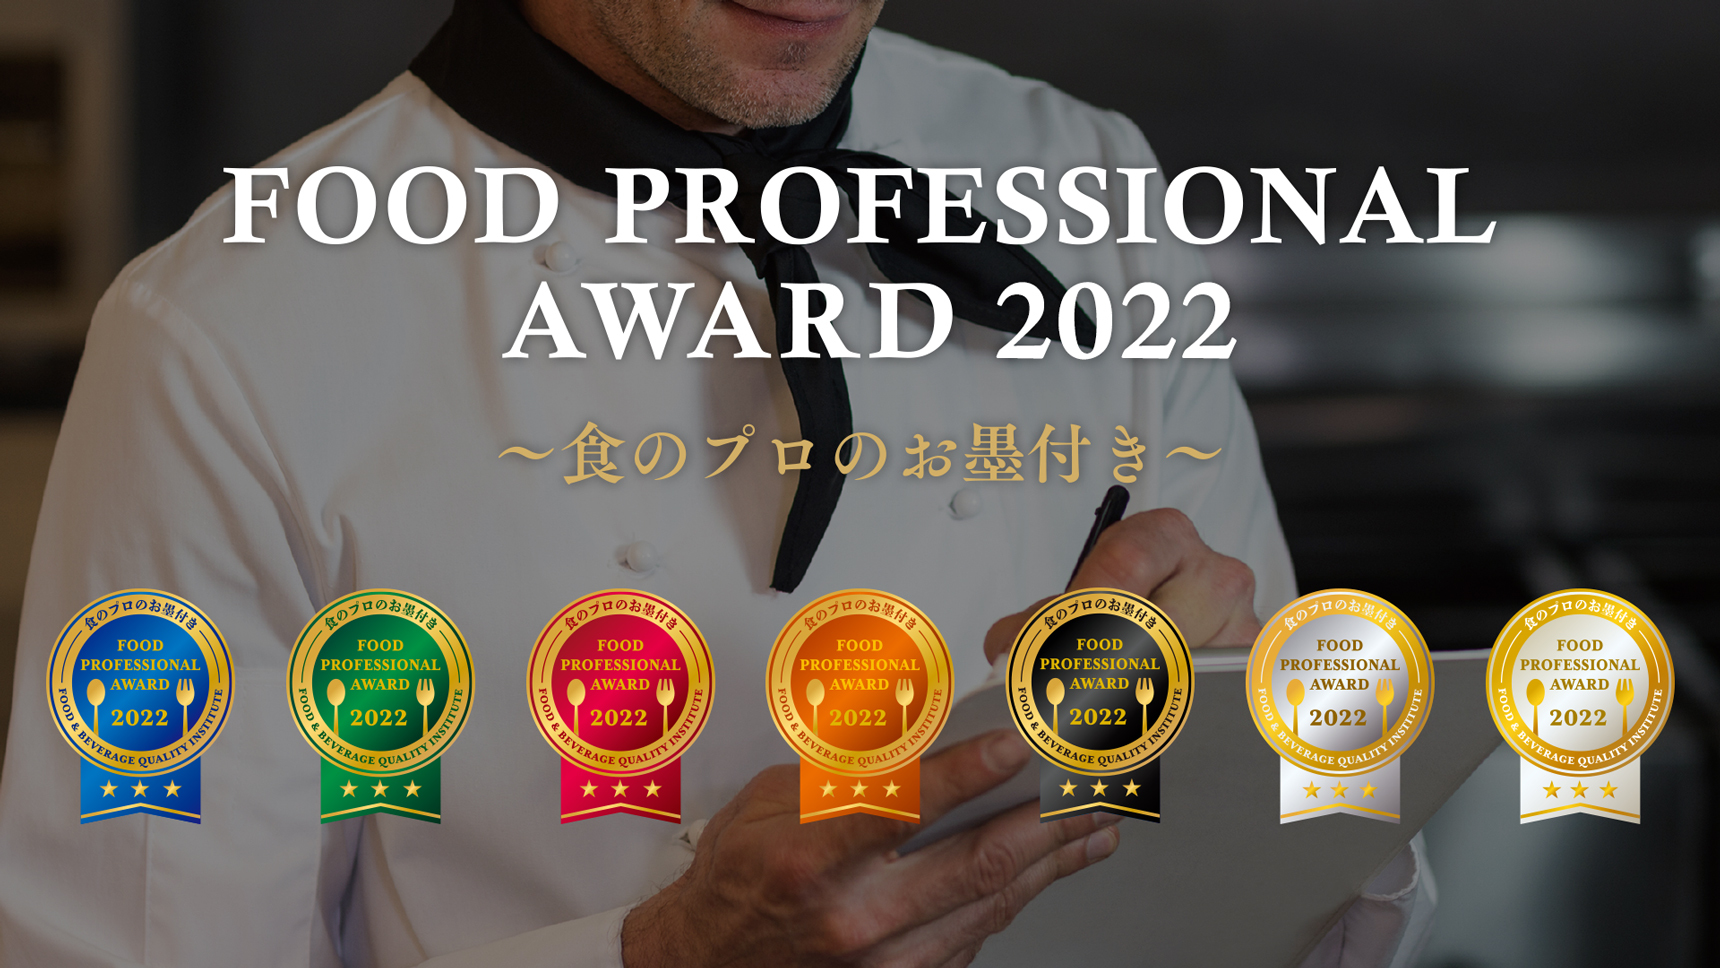 食の品評会「FOOD PROFESSIONAL AWARD 2022」結果発表！
3つ星はSNSで話題の燻製ドレッシングなど40商品